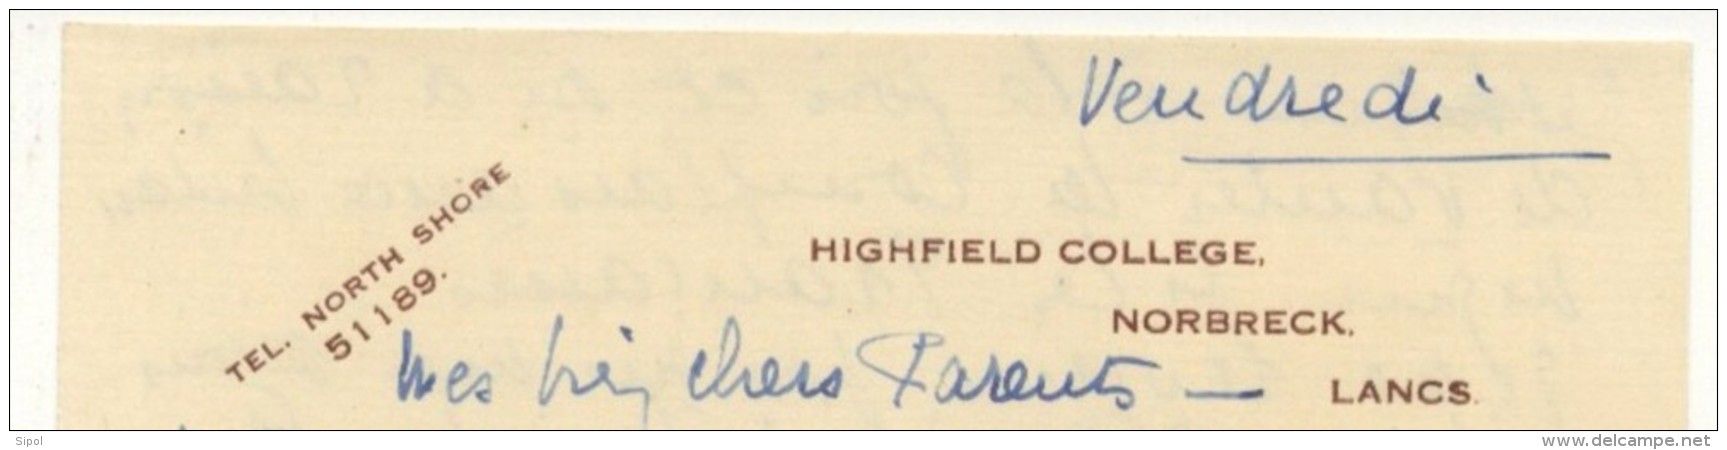 Lettre à Entête Highfield College ,  Norbreck Lancs  1935 Enviton BE - United Kingdom